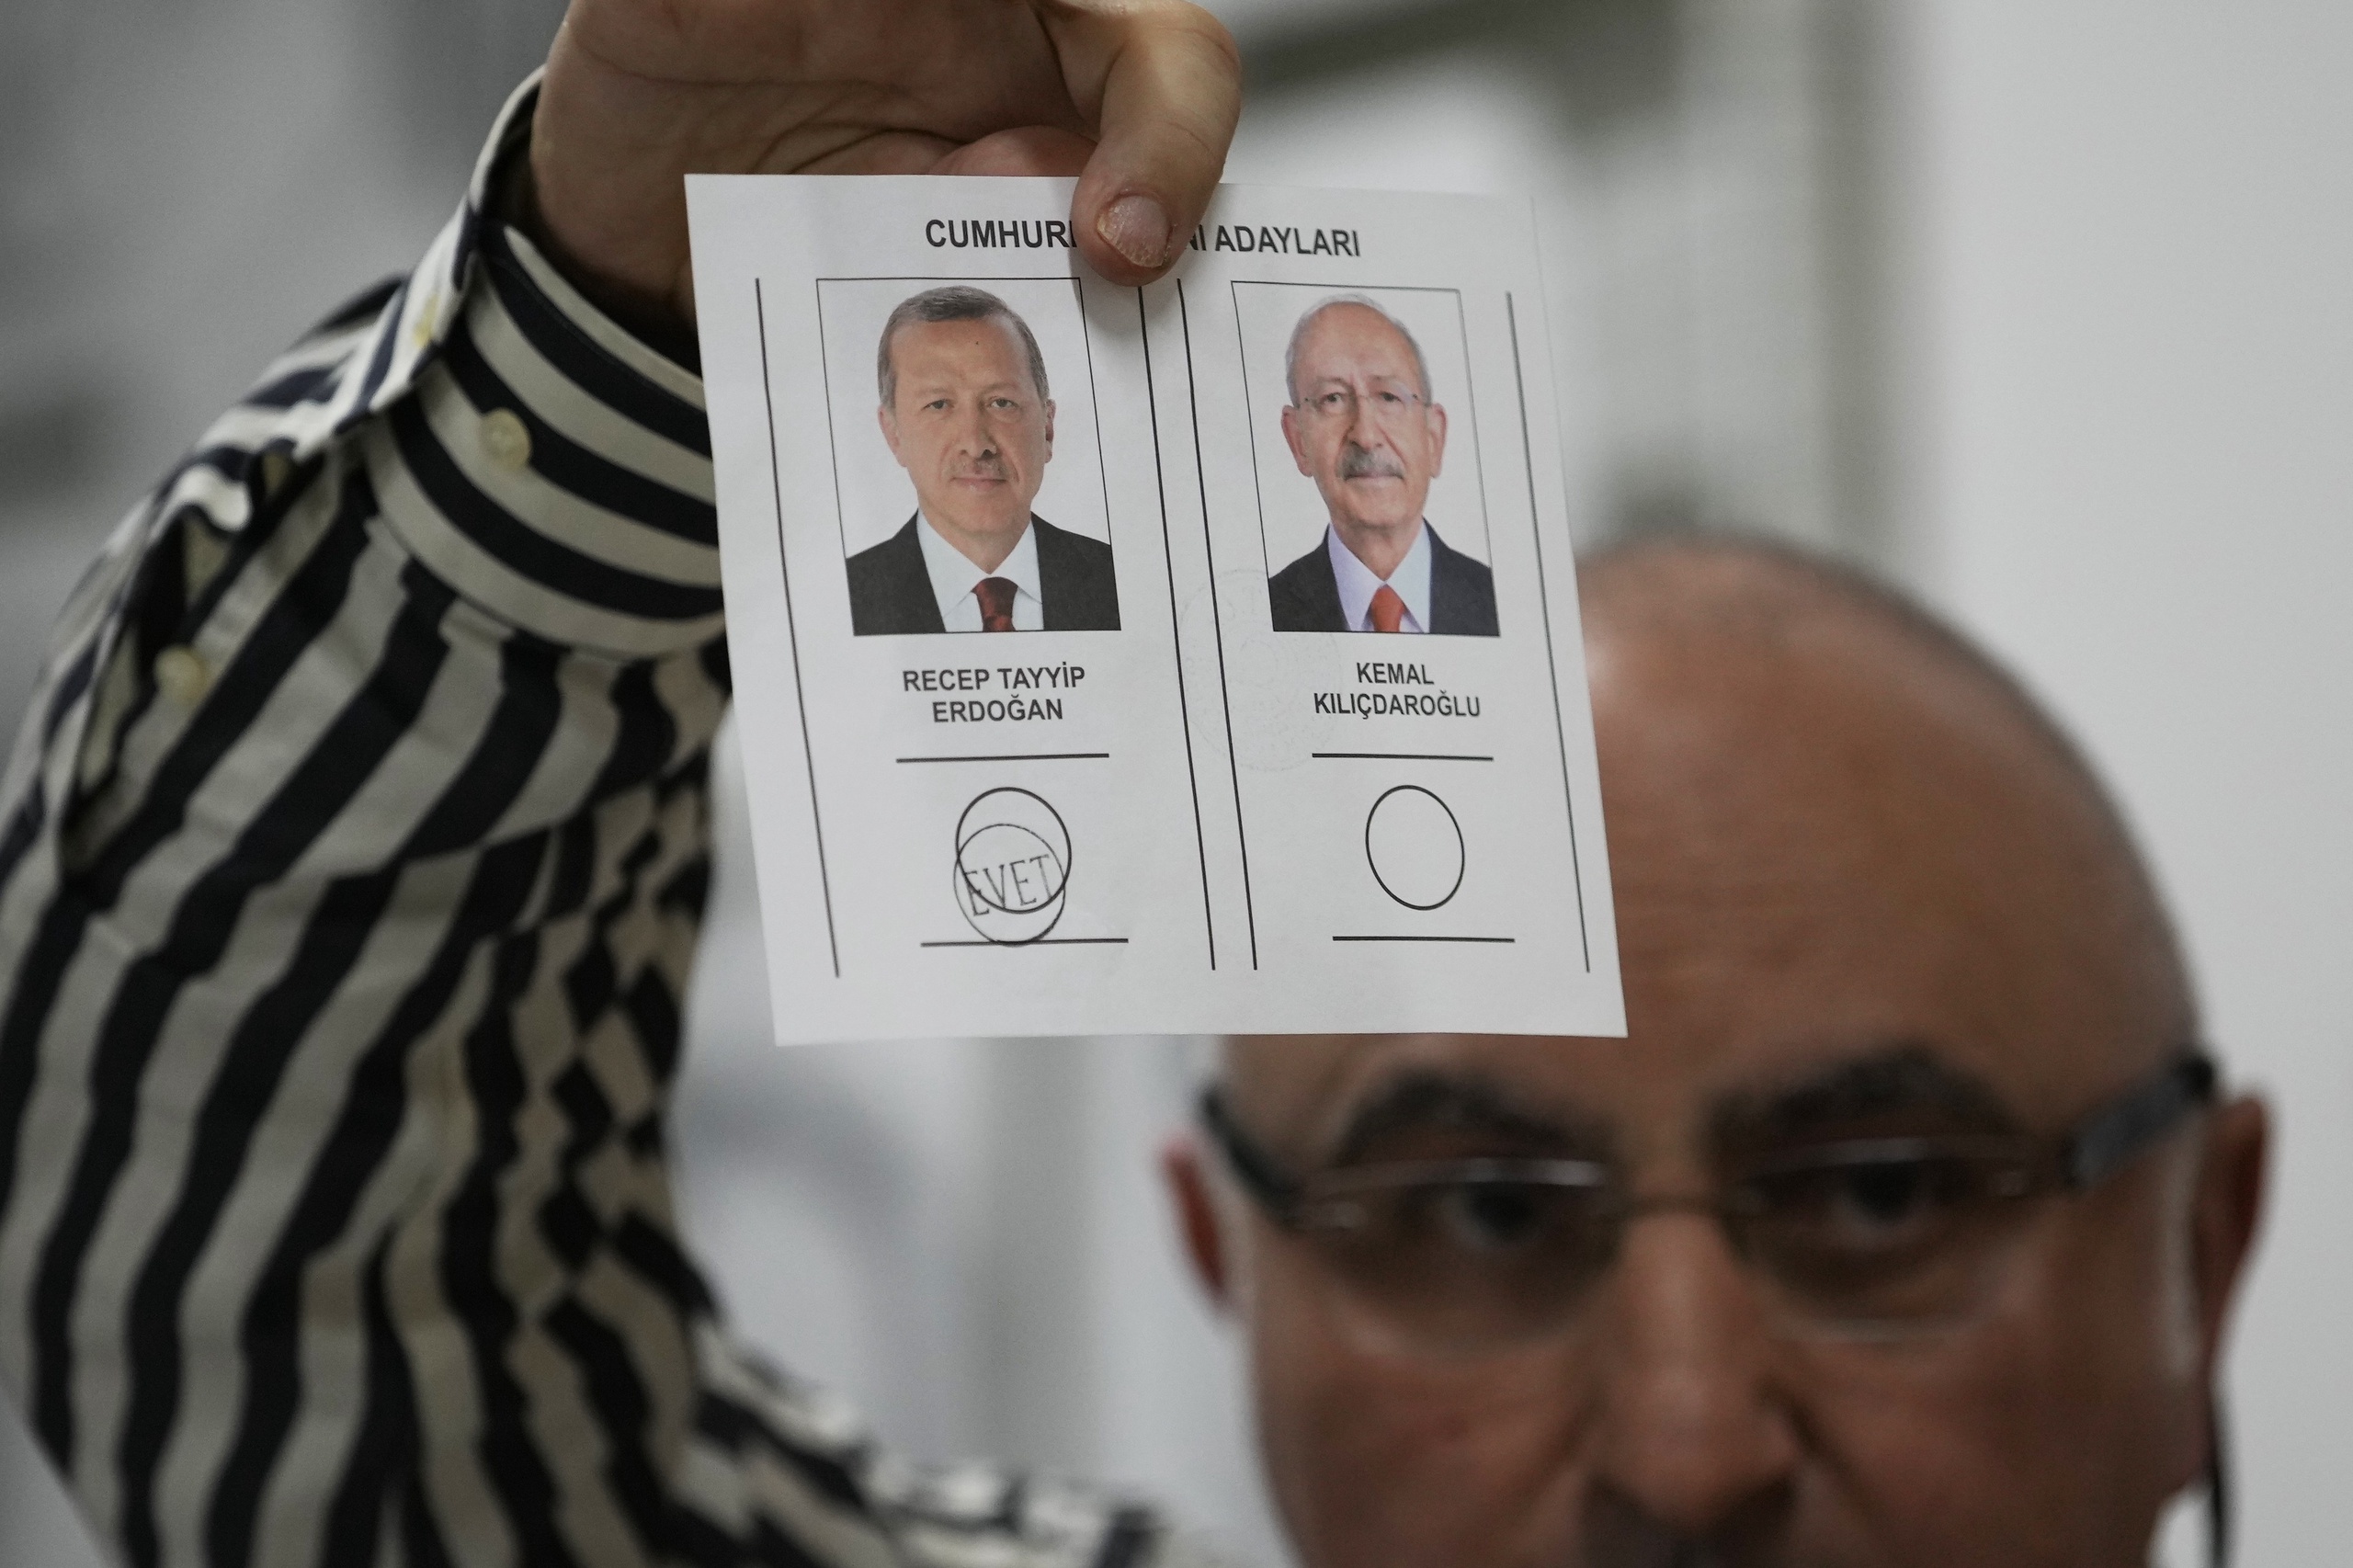 Recep Tayyip Erdogan heeft de Turkse presidentsverkiezingen gewonnen, melden staatsmedia op basis van de eerste uitslagen. Na het tellen van meer dan 40 procent van de stemmen leidt Erdogan met ruim 56 procent, aldus persbureau Anadolu. Volgens de zender NTV stond Erdogan op 58 procent na telling van ruim 35 procent van de stemmen.